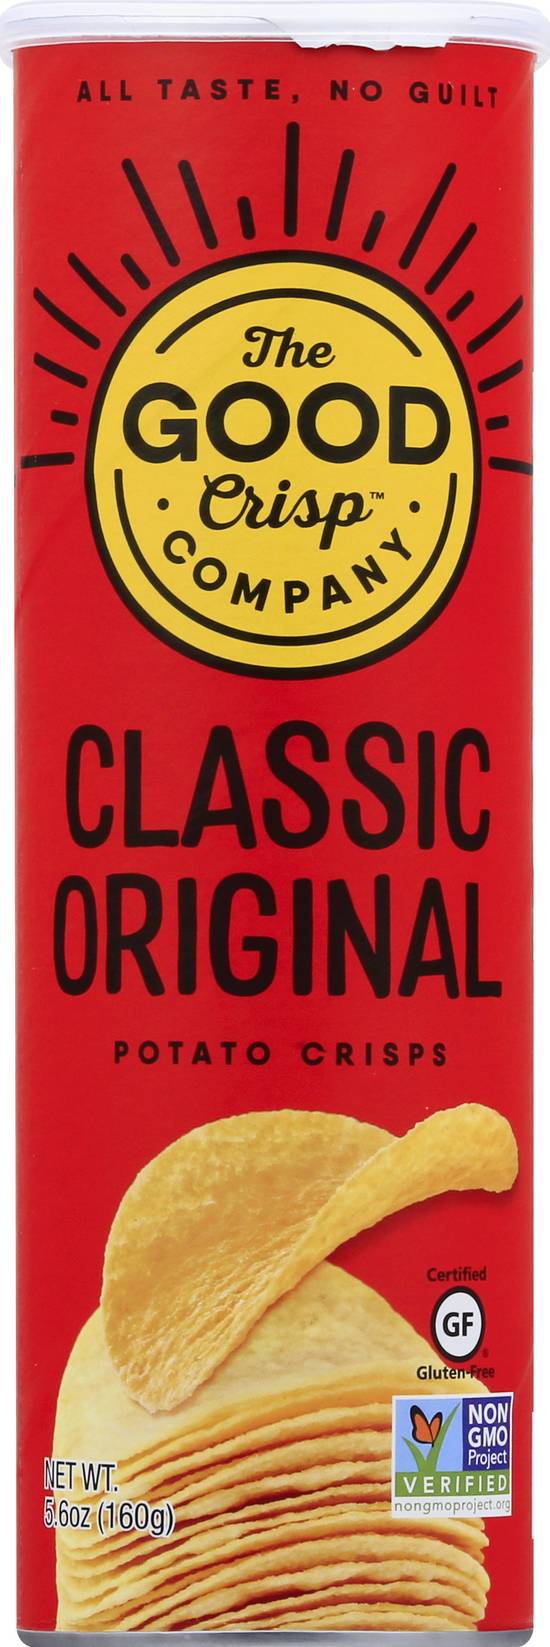 The Good Crisp Company Classic Original Potato Crisps